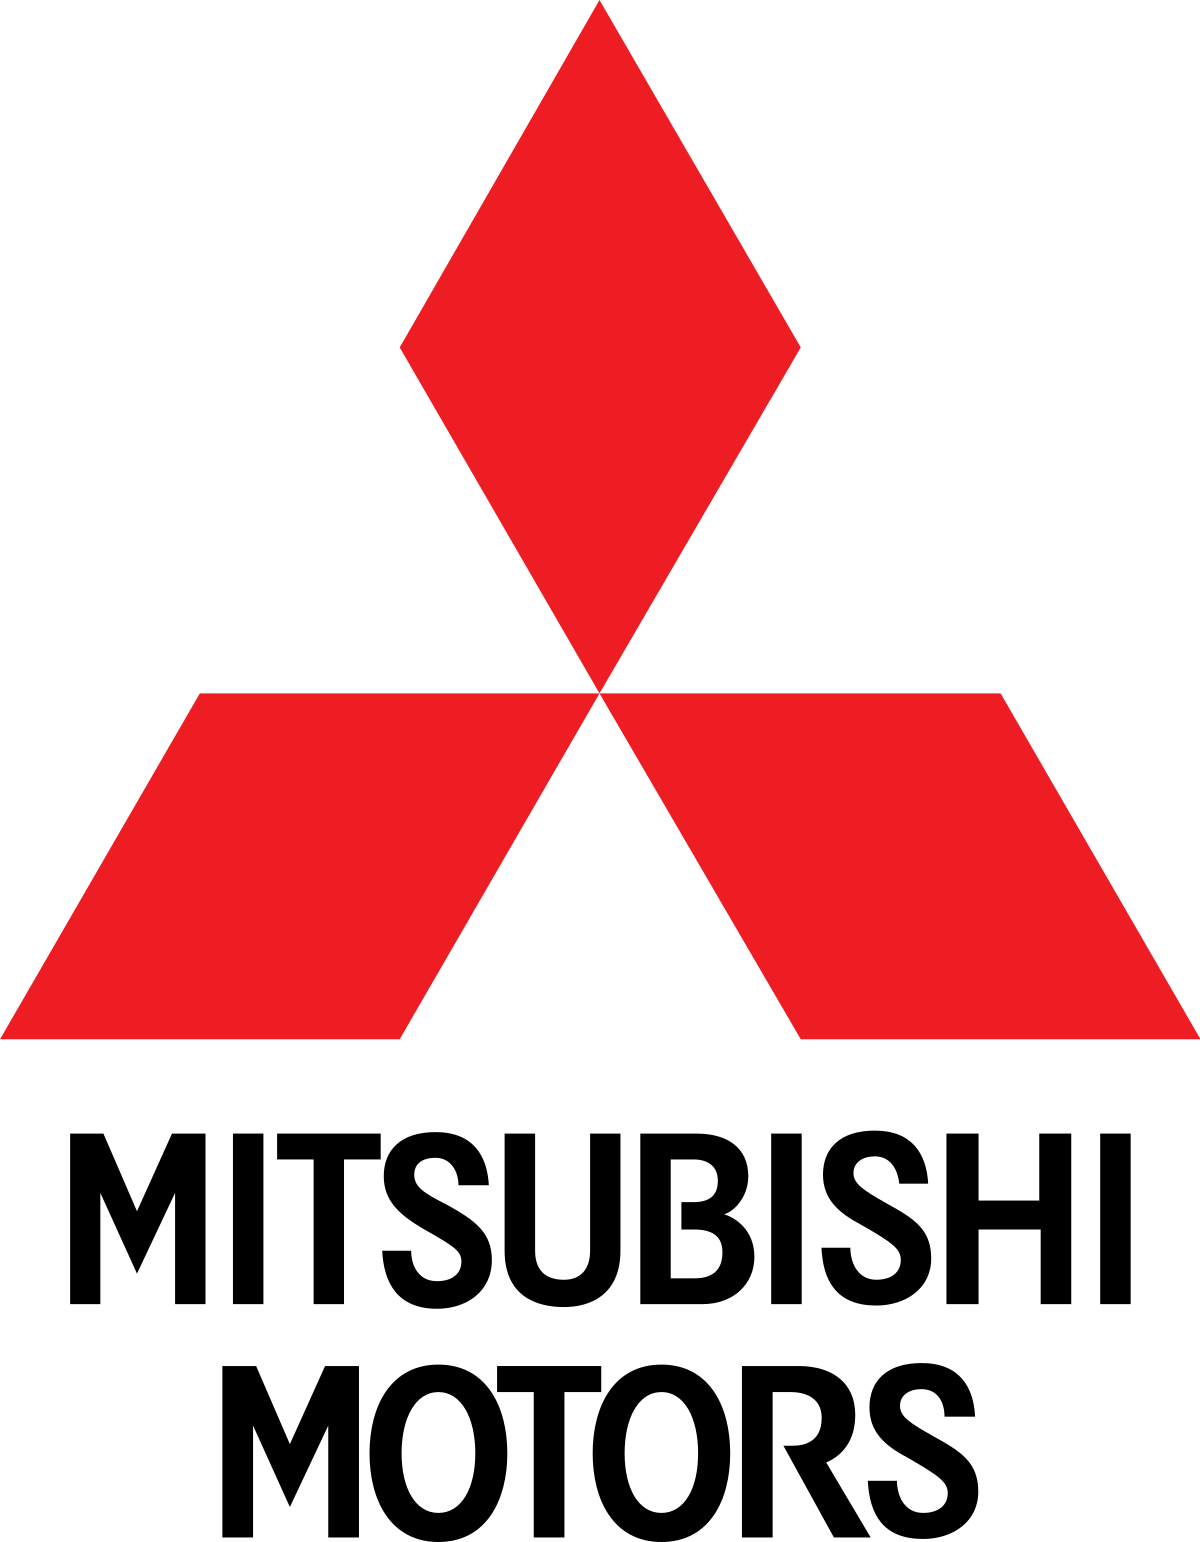 анализ логотипа mitsubishi